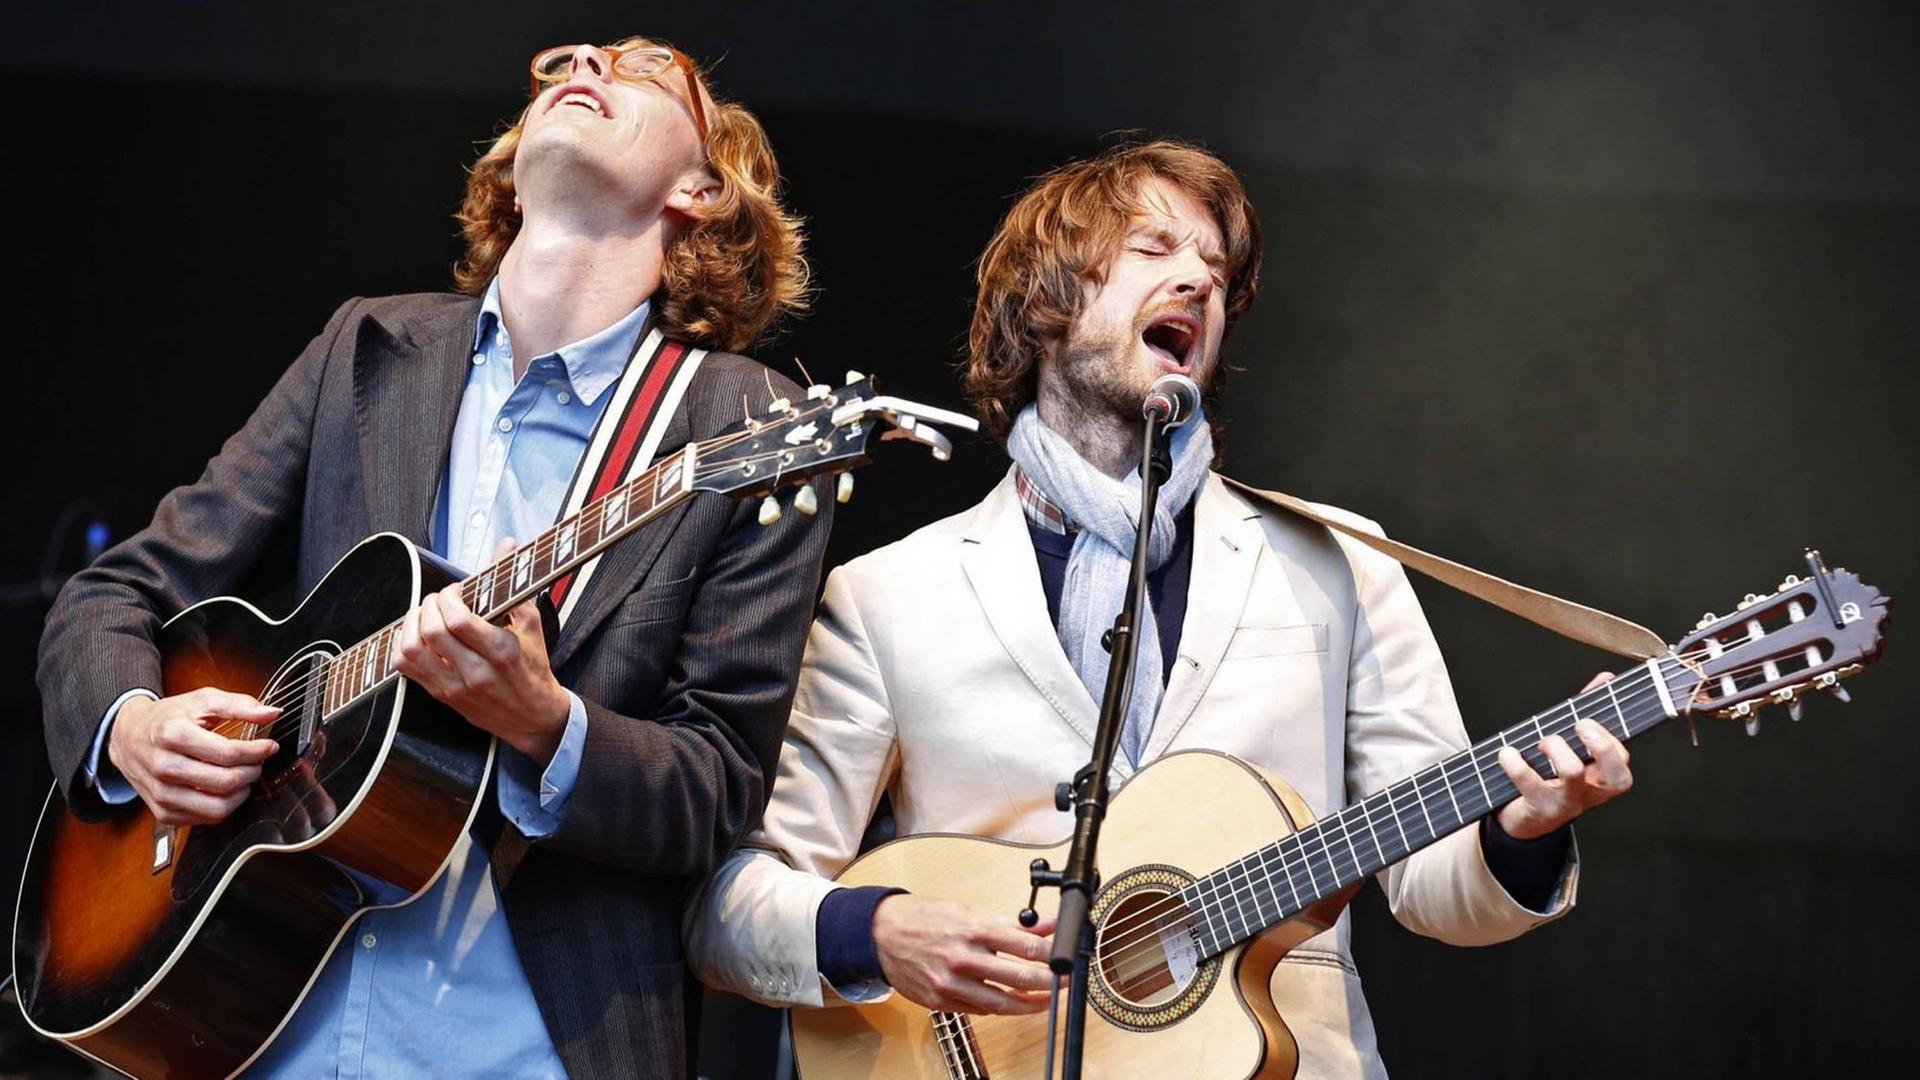 Die beiden Musiker des Duos Kings of Convenience mit Gitarre auf der Bühne.